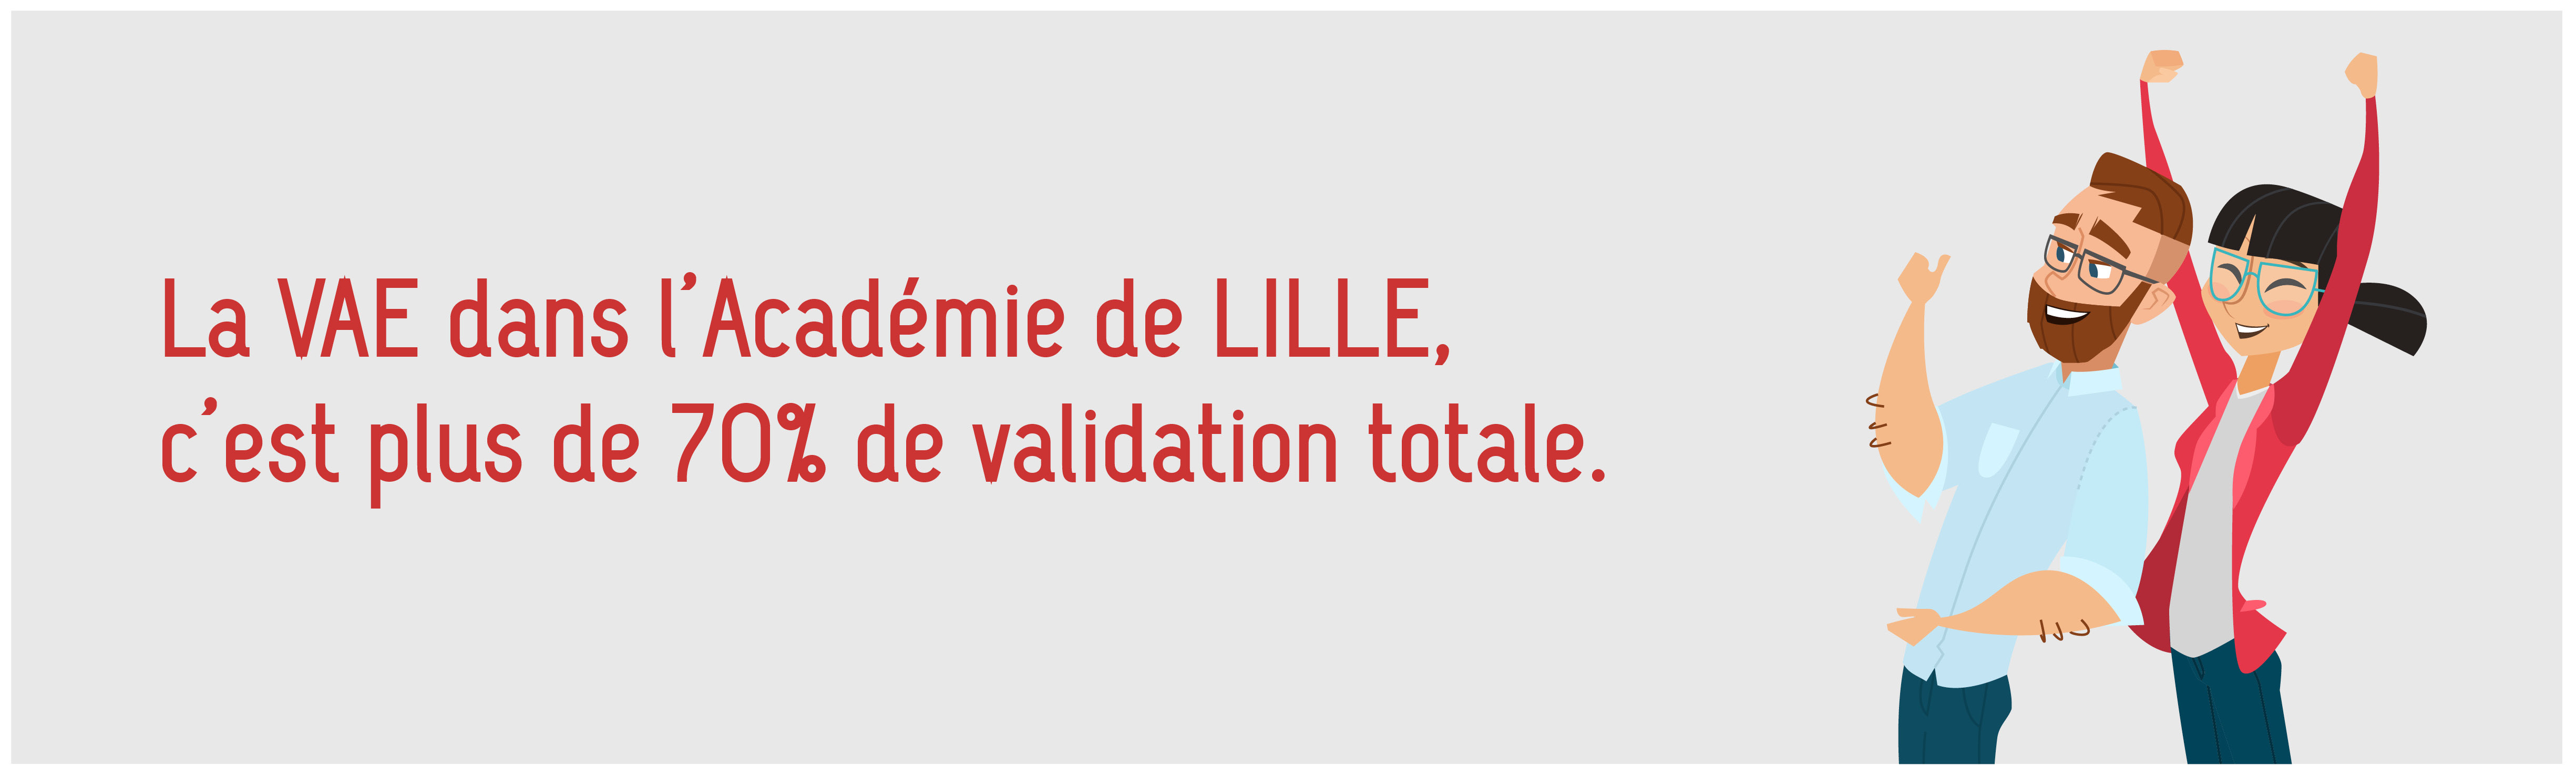 La VAE dans l'académie de Lille, c'est plus de 70% de validation totale.